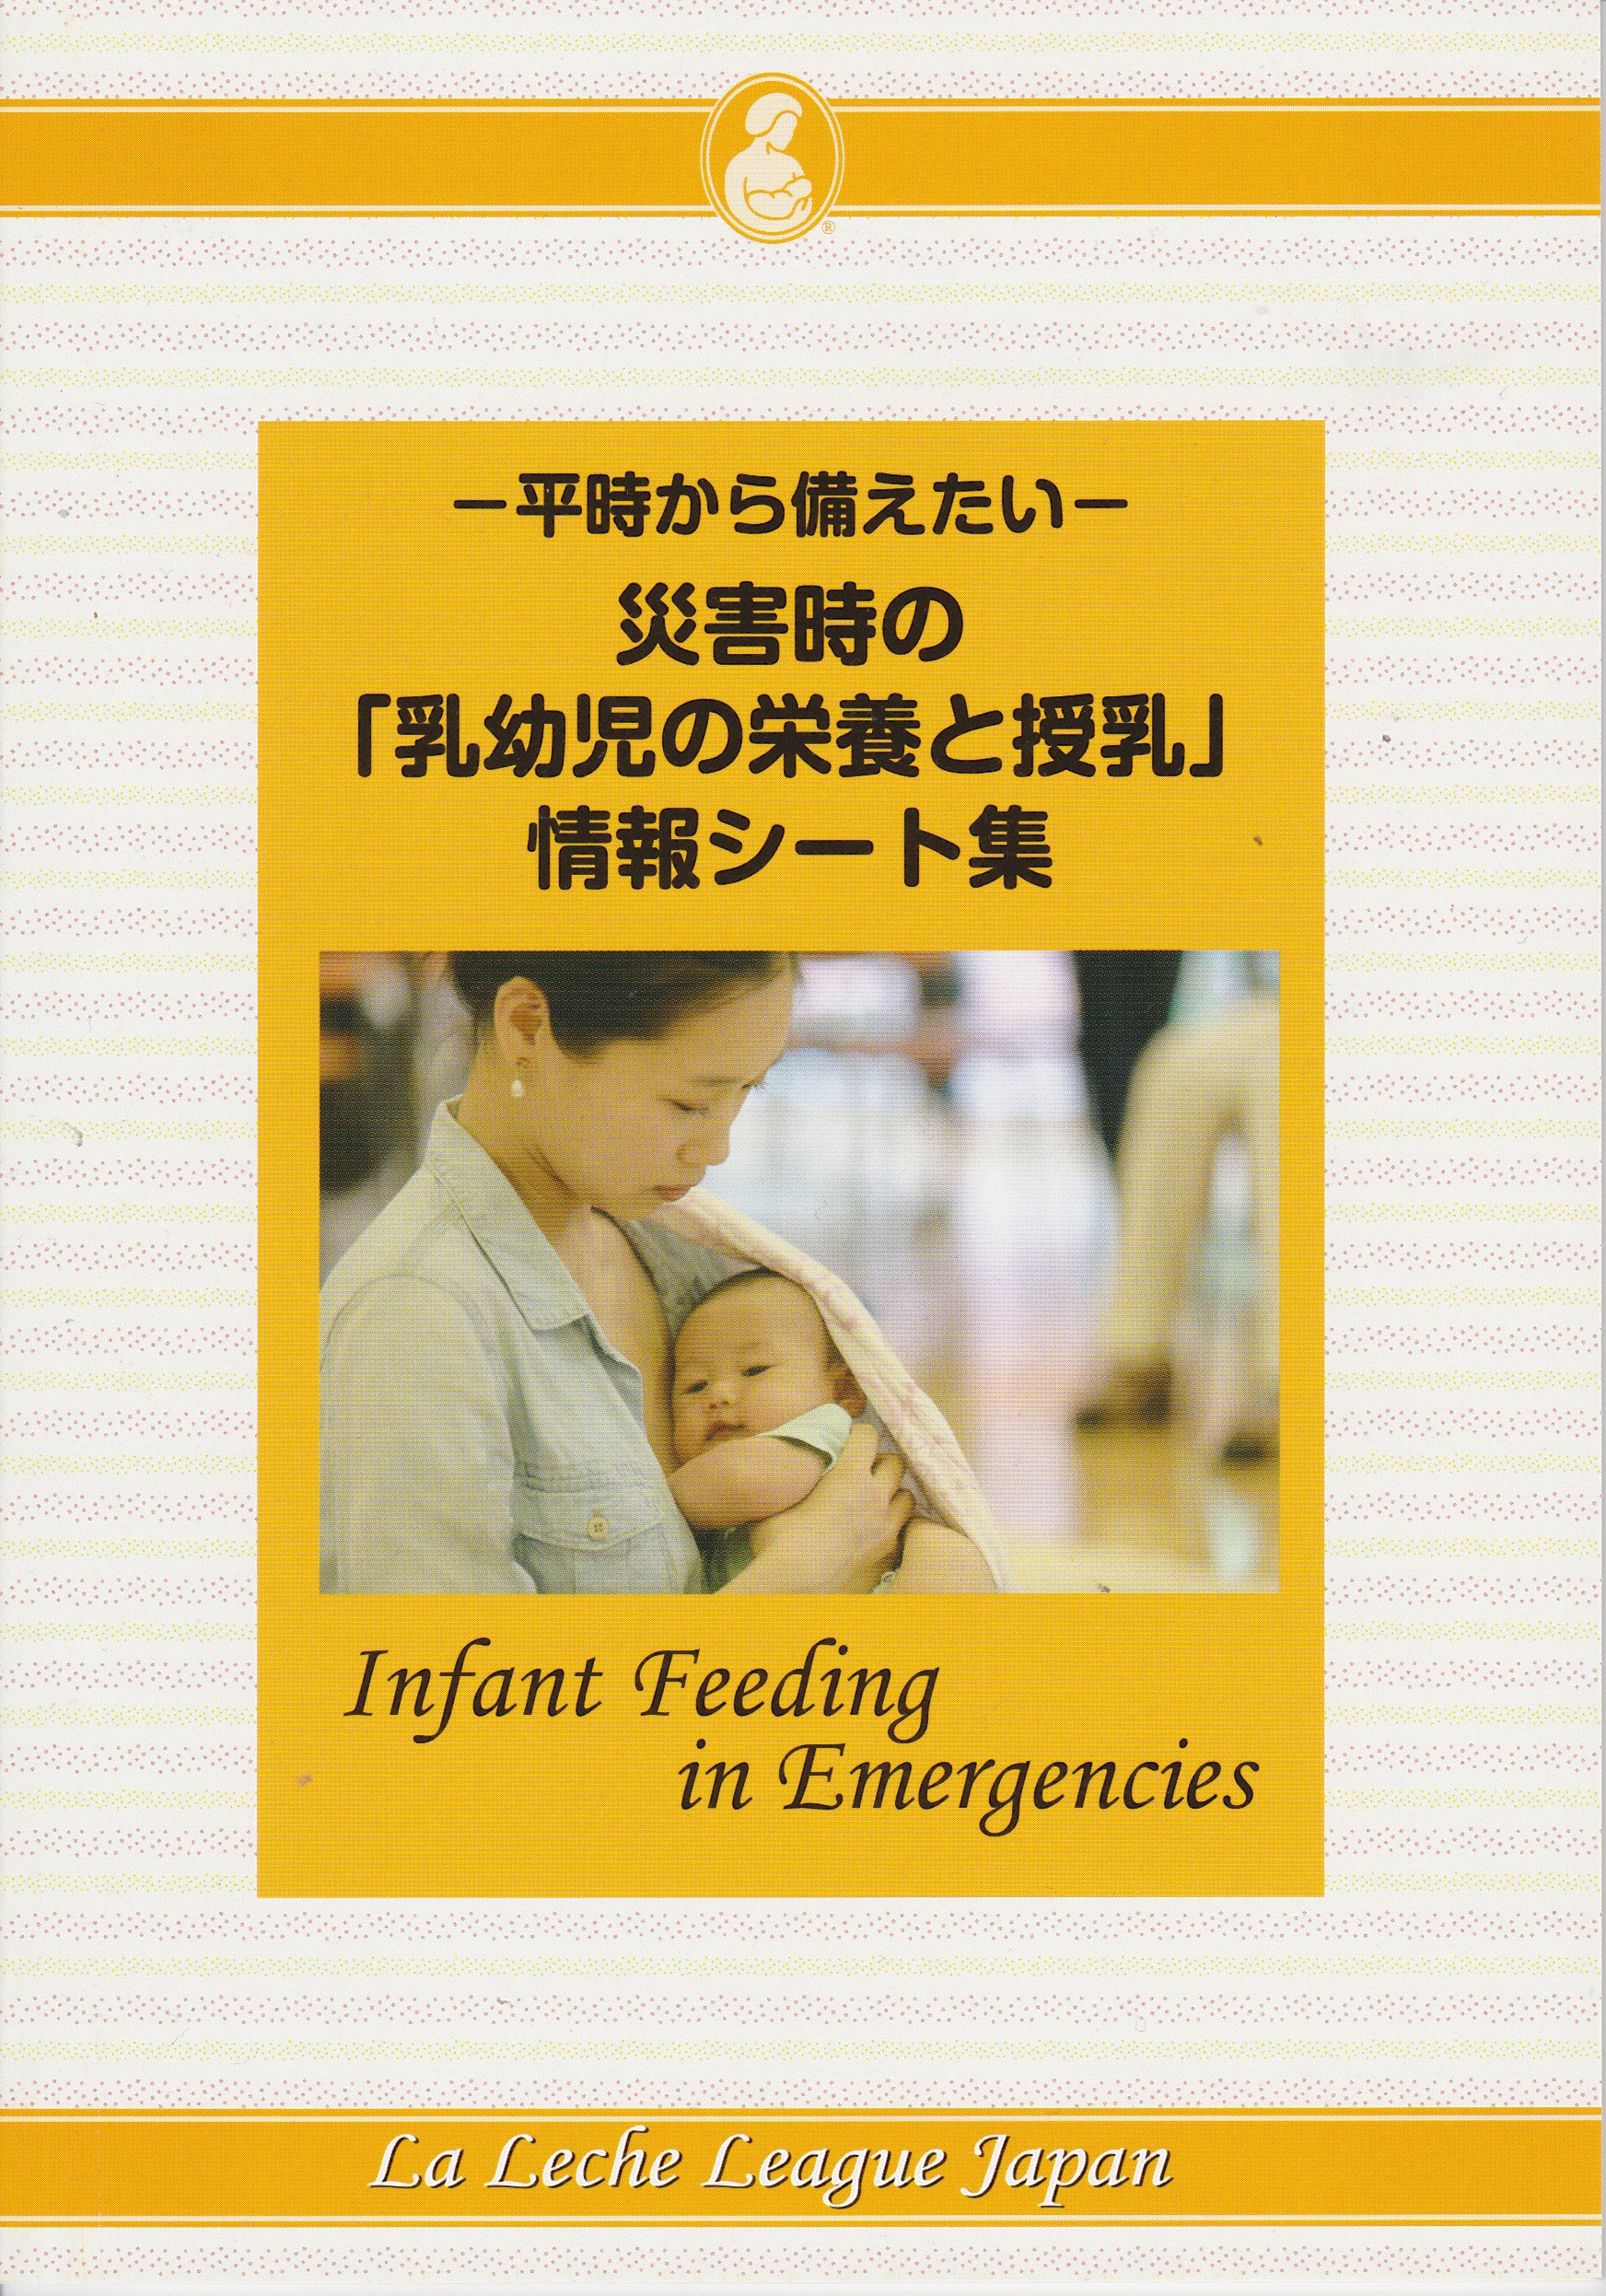 ～平時から備えたい～ 災害時の「乳幼児の栄養と授乳」情報シート集